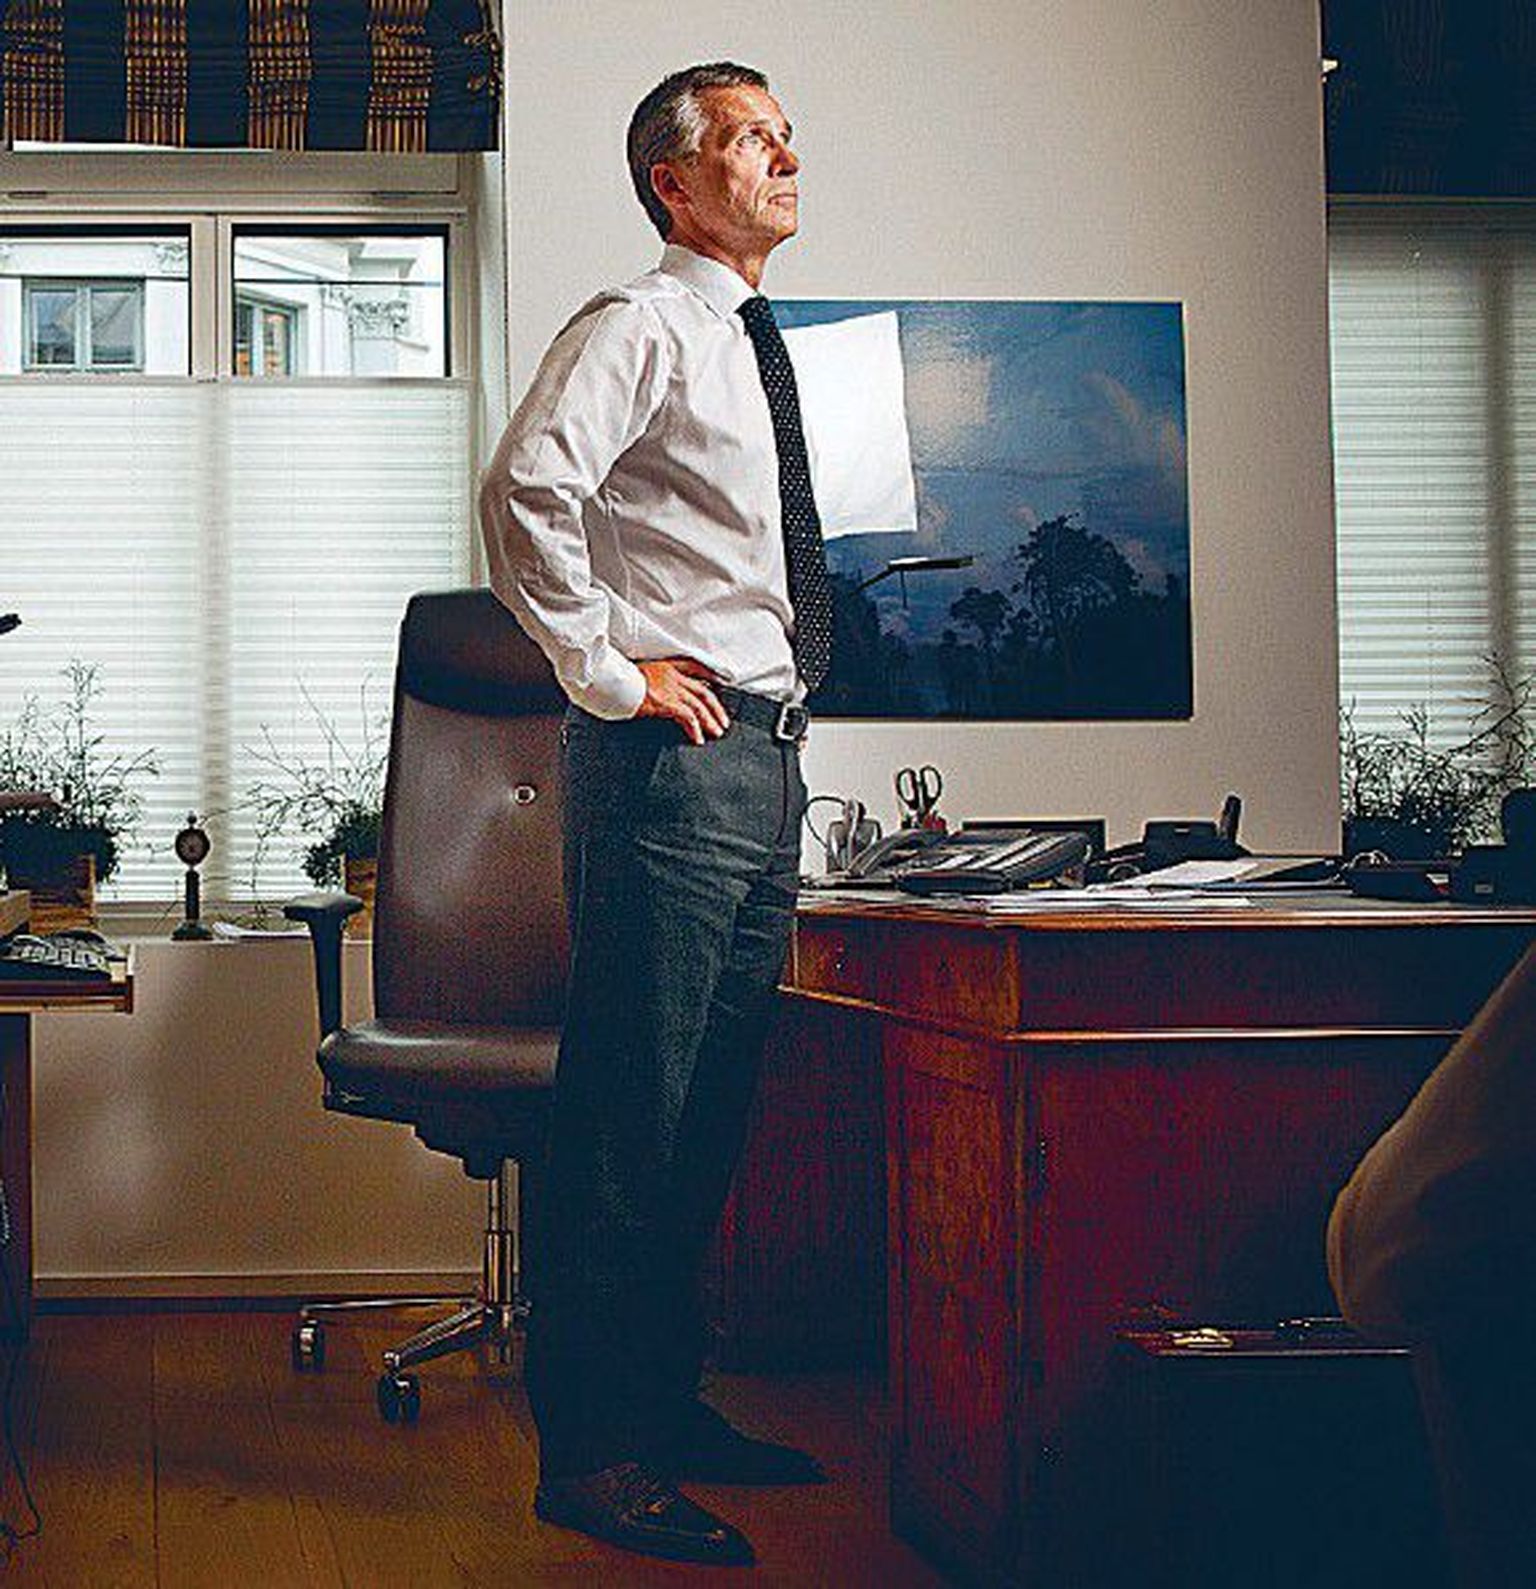 Jens Stoltenberg möödunud kolmapäeval oma kodukontoris Oslos. Juba 22. juuli õhtul muudeti peaministri kodu täiesti toimivaks riigivalitsemise keskuseks. Magamistubasid kasutatakse kontoritena, esimesel korrusel asuvat diivanikomplekti koosolekute kohana.